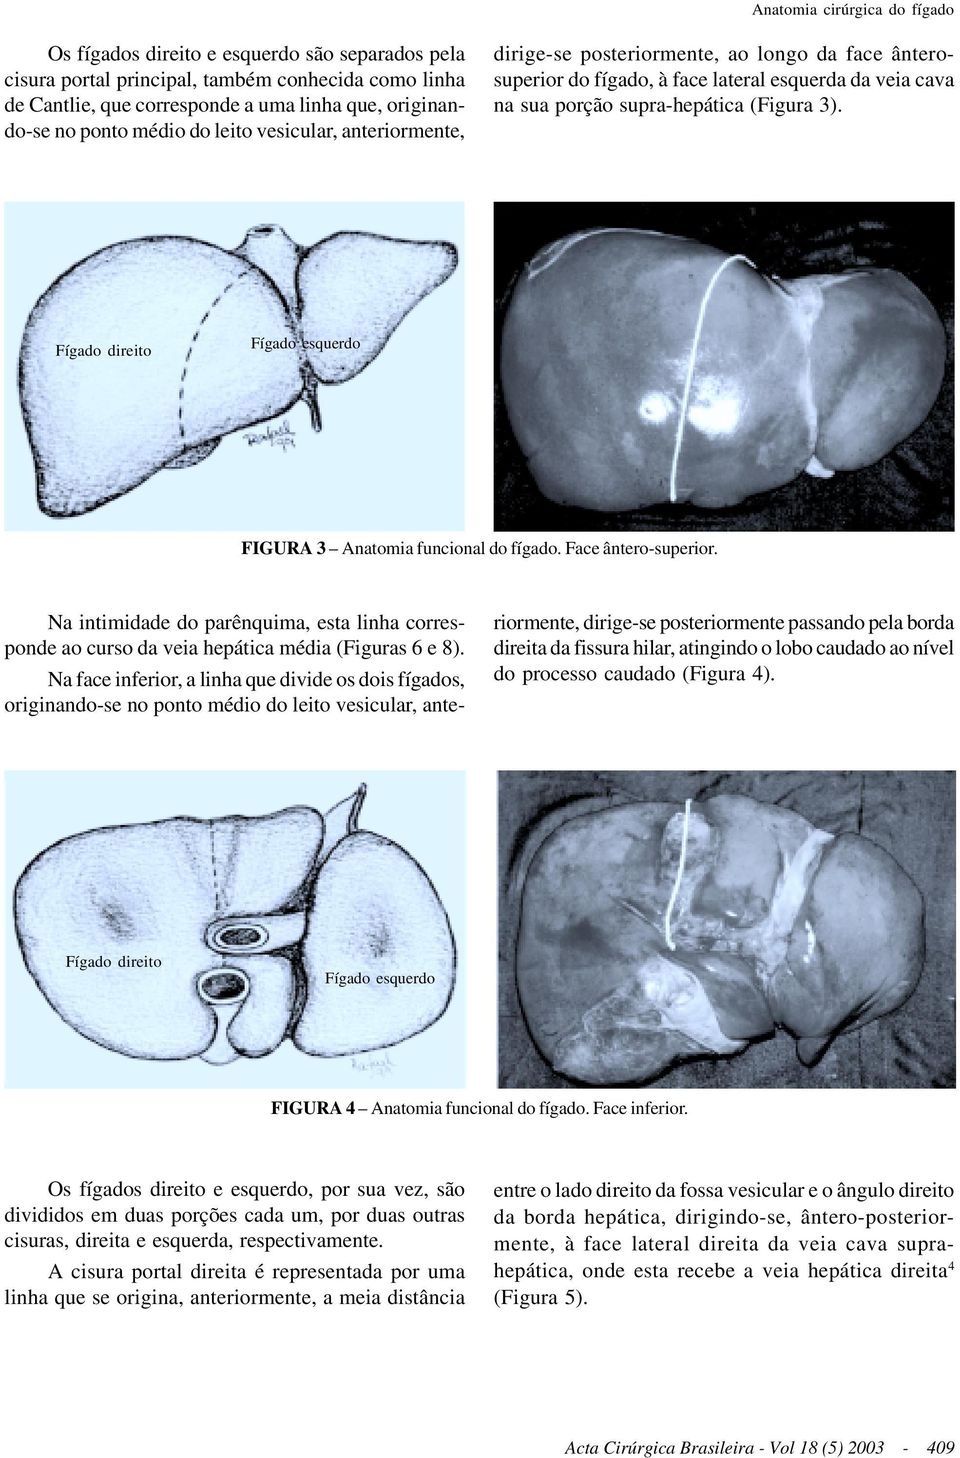 Fígado direito Fígado esquerdo FIGURA 3 Anatomia funcional do fígado. Face ântero-superior. Na intimidade do parênquima, esta linha corresponde ao curso da veia hepática média (Figuras 6 e 8).